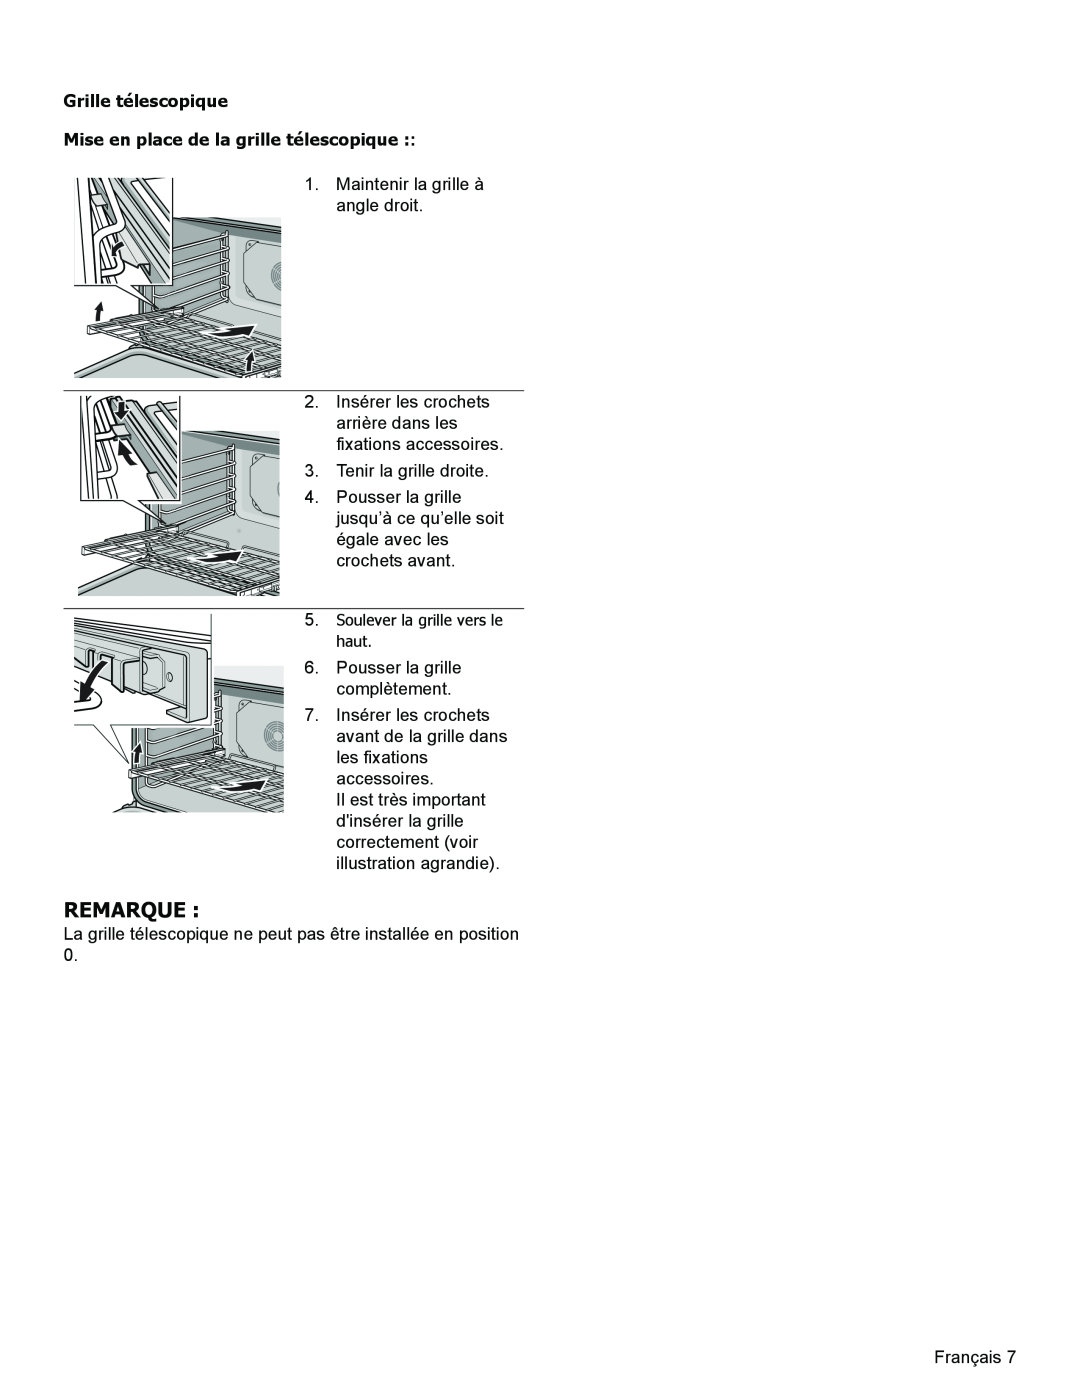 Thermador PODM301, PODMW301 manual Remarque, Grille télescopique, Mise en place de la grille télescopique 